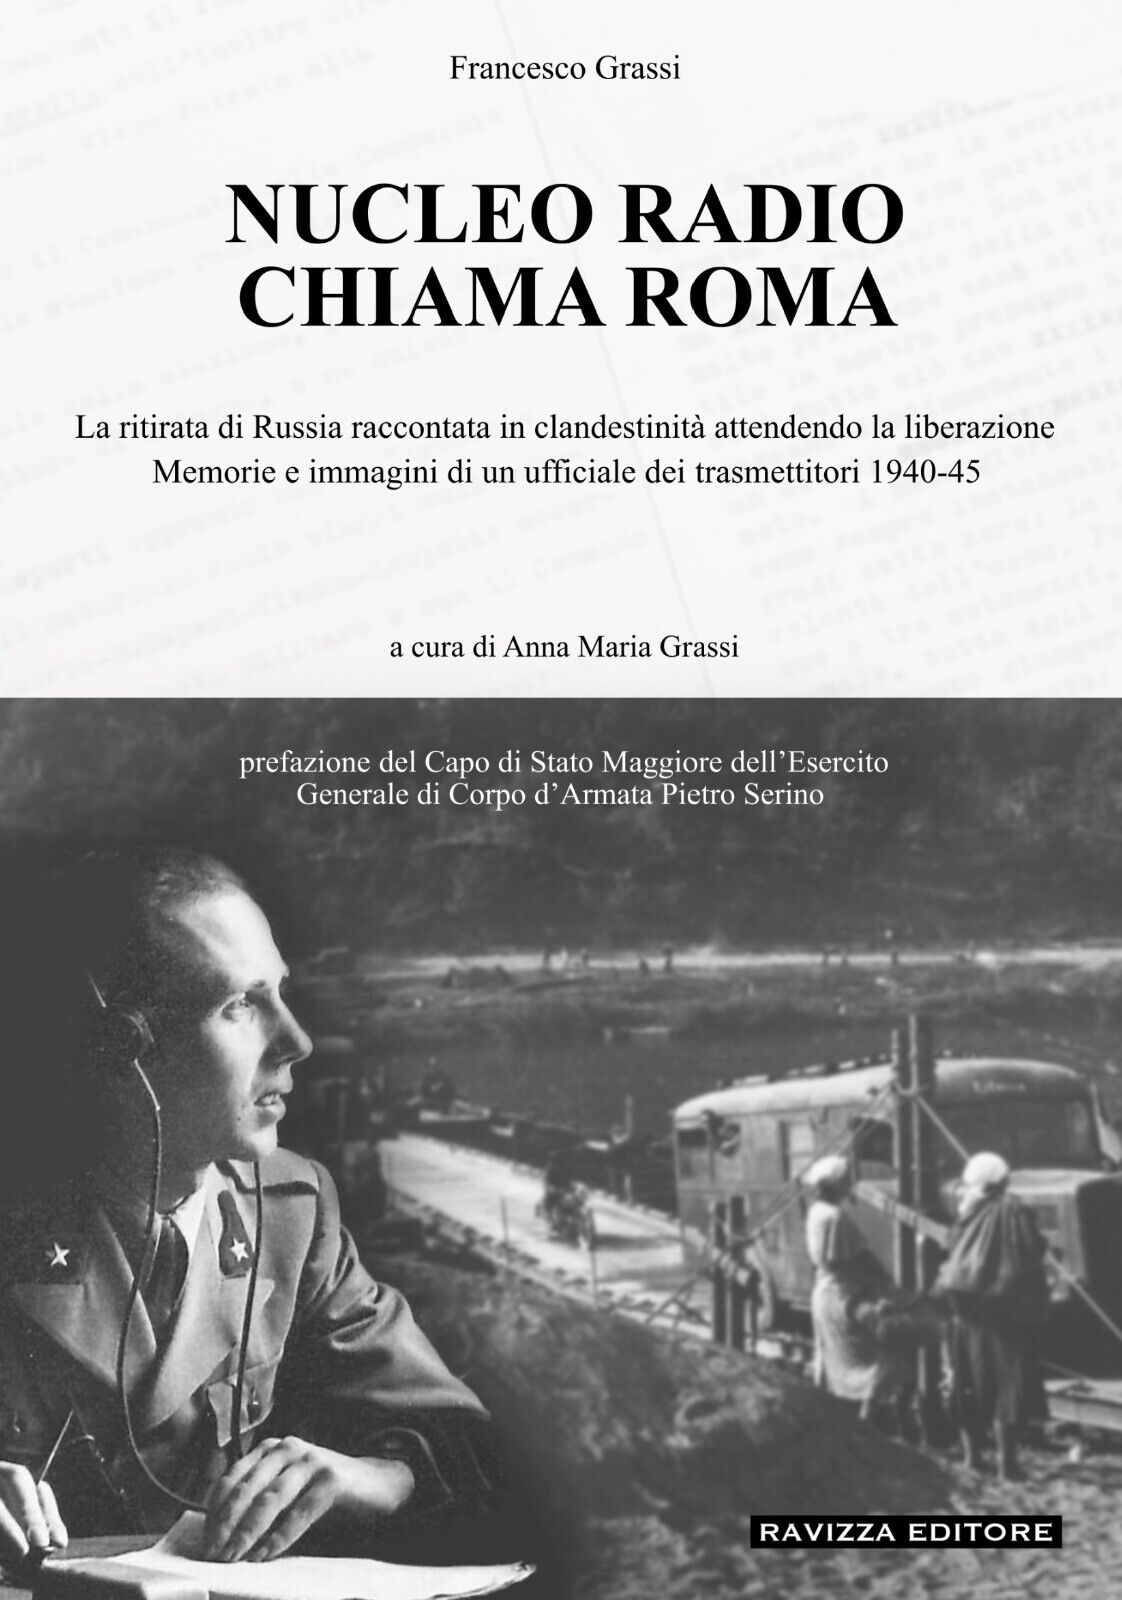 NUCLEO RADIO CHIAMA ROMA. Edizione limitata Libreria Libr'Aria